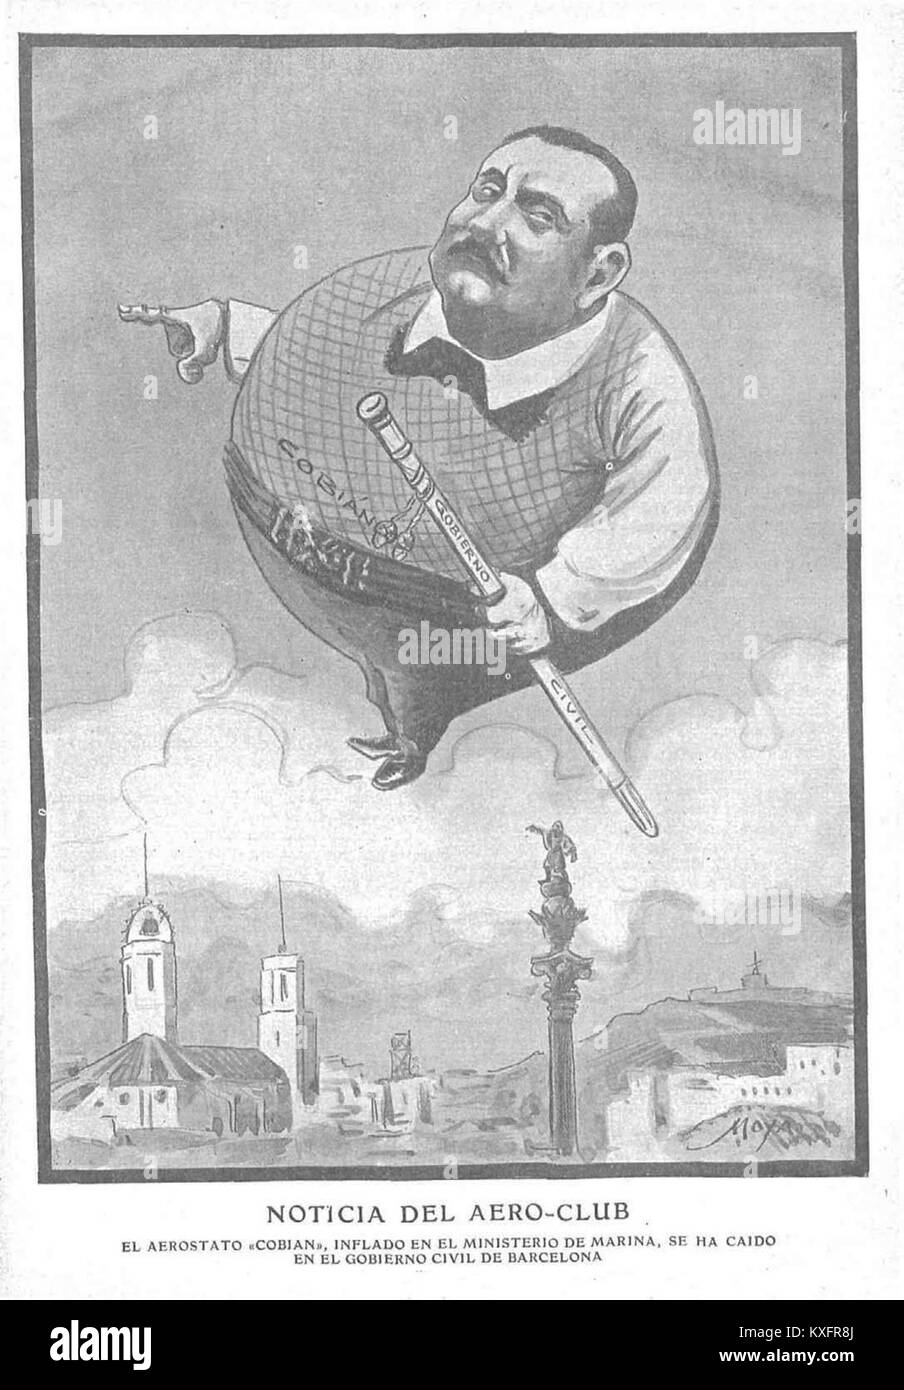 1906-07-01, Gedeón, Noticia del aero-Club, Moya Stockfoto